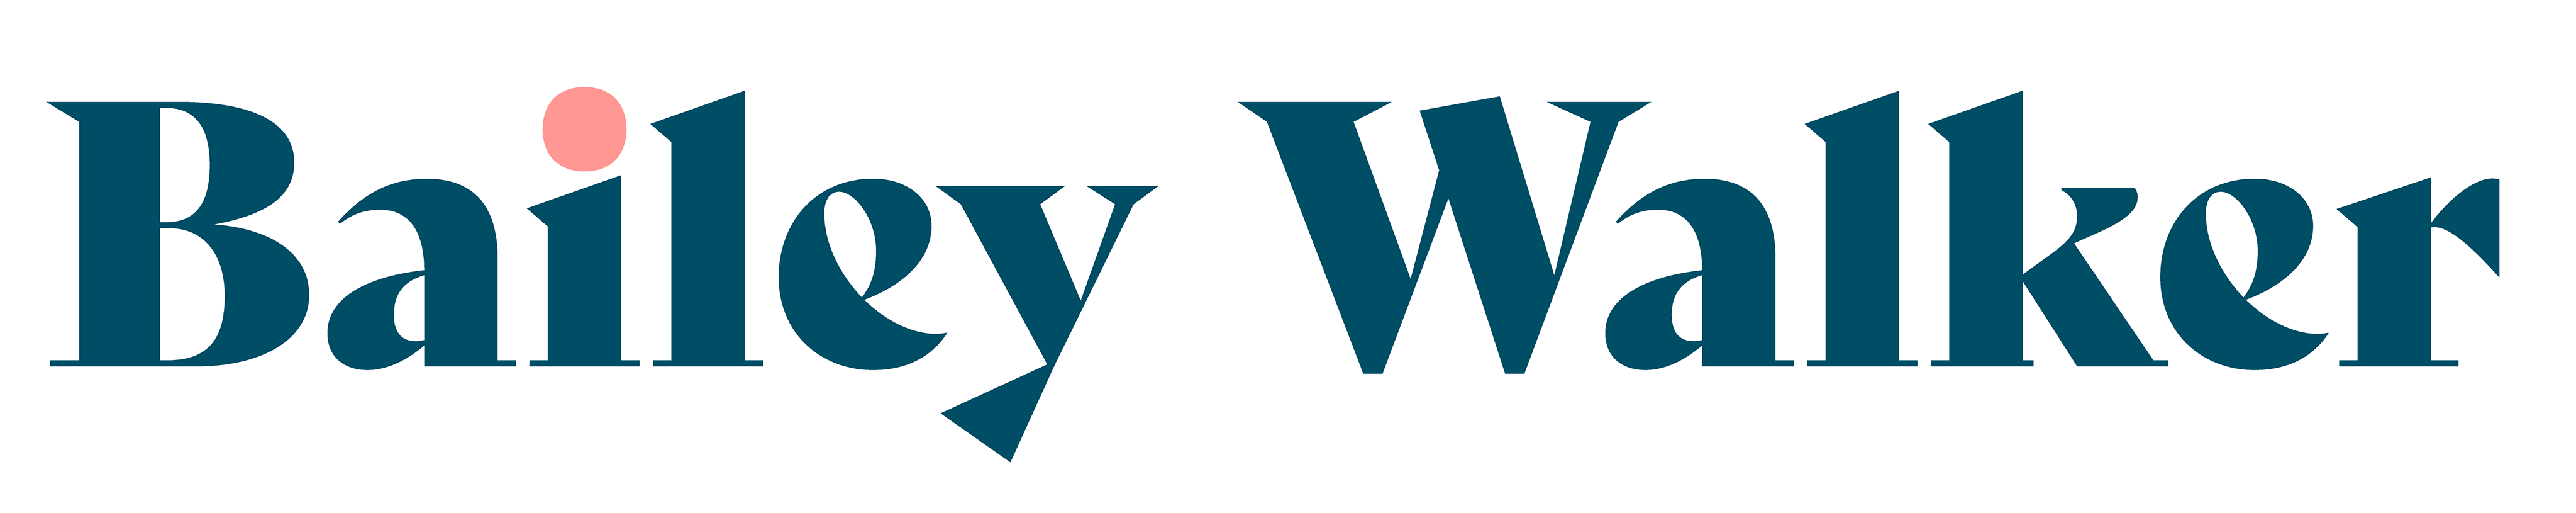 Bailey Walker logo